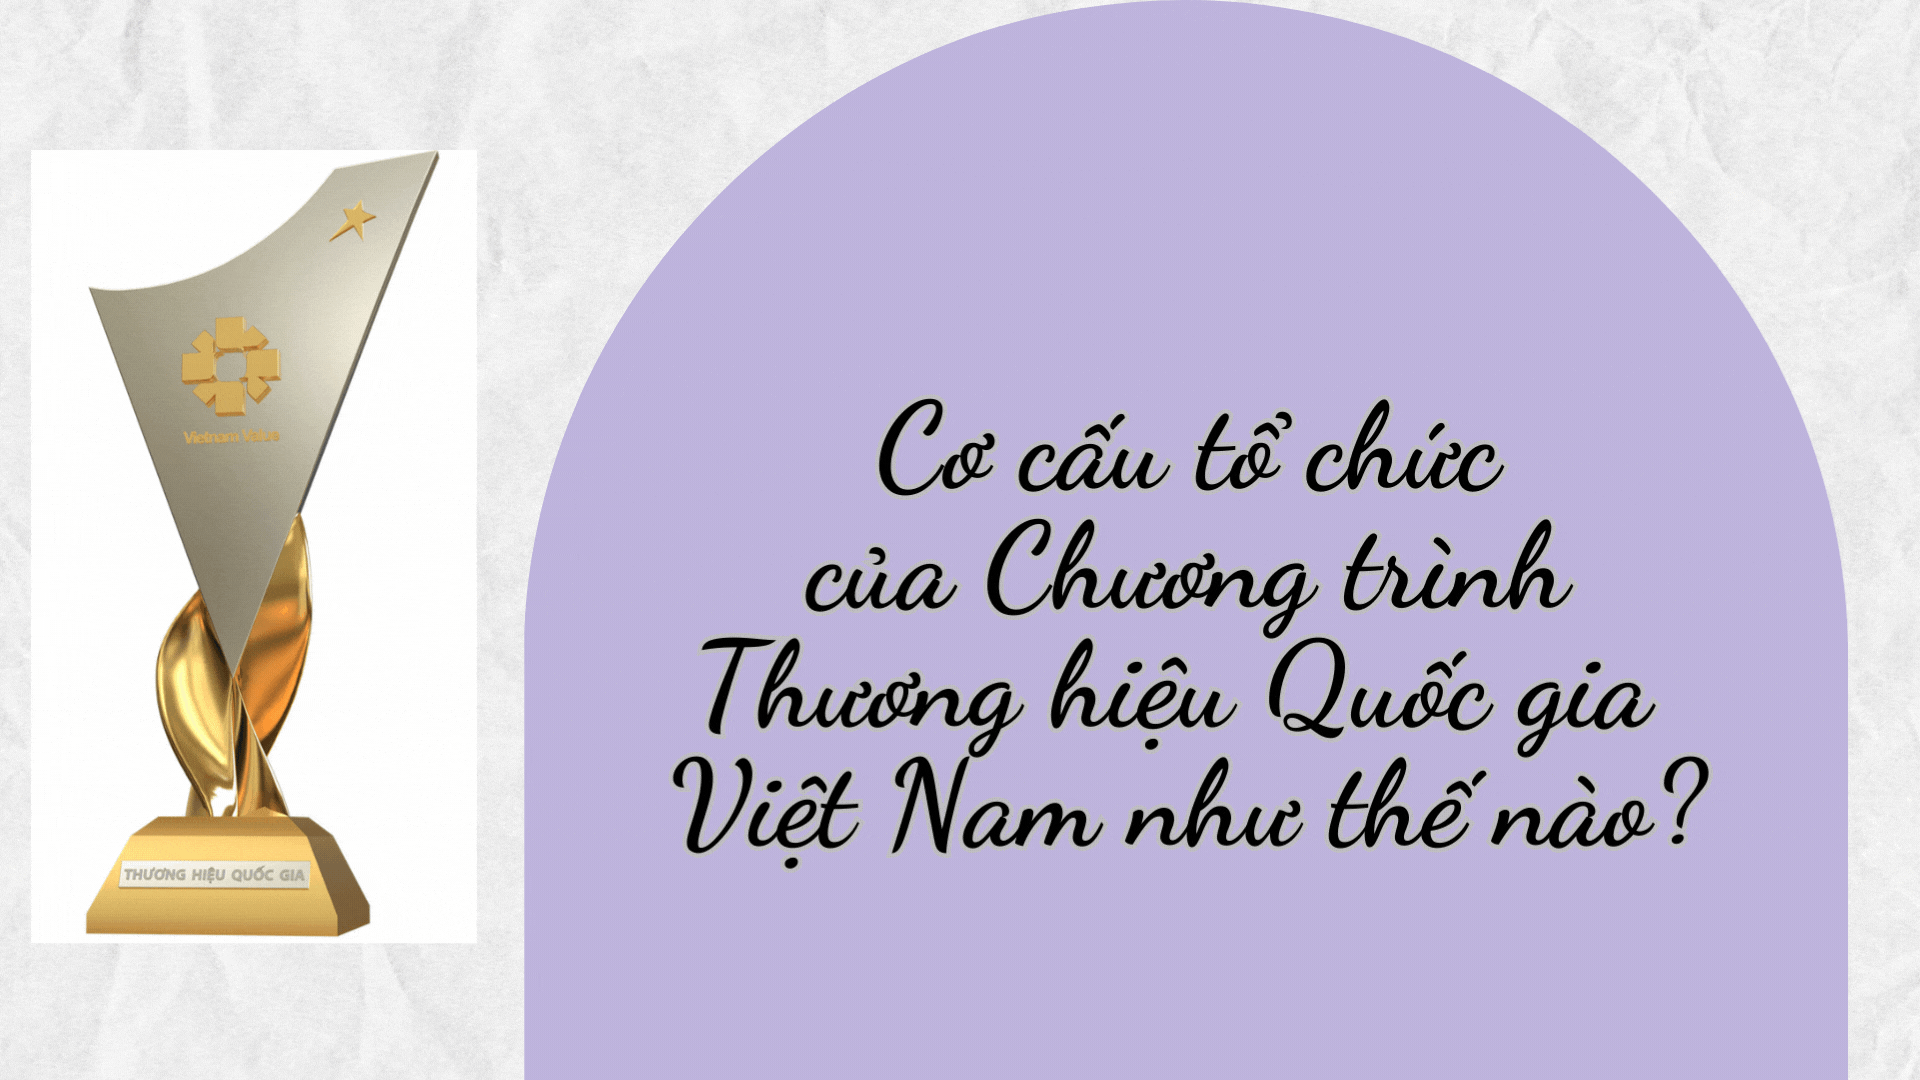 [Hỏi-Đáp] Cơ cấu tổ chức của Chương trình Thương hiệu Quốc gia Việt Nam như thế nào?